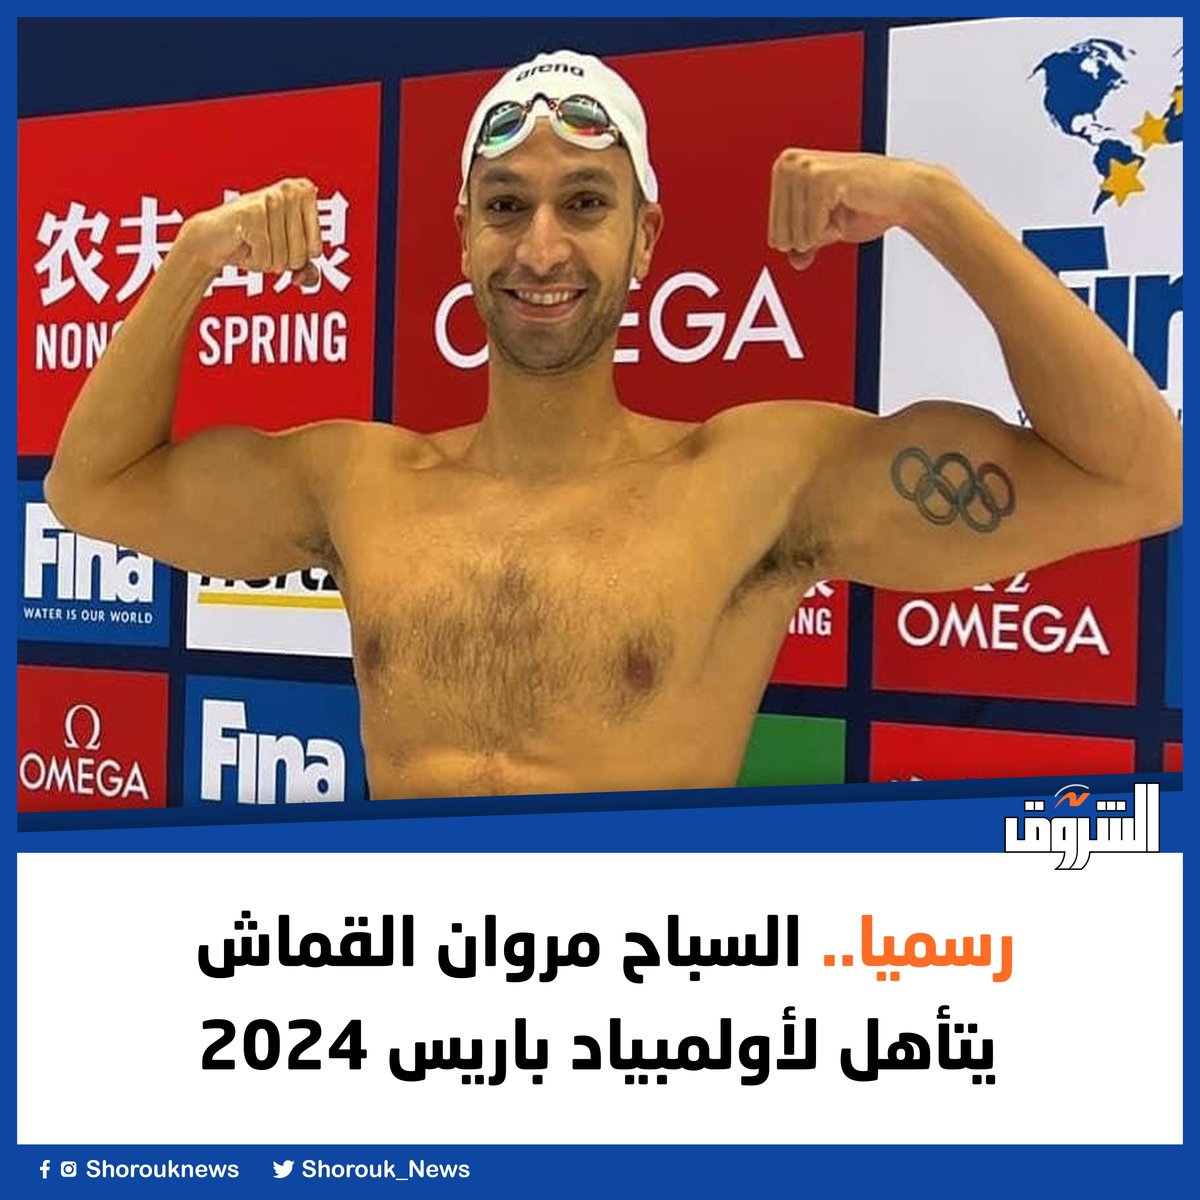 رسميا.. السباح مروان القماش يتأهل لأولمبياد باريس 2024 shorouknews.com/news/view.aspx…